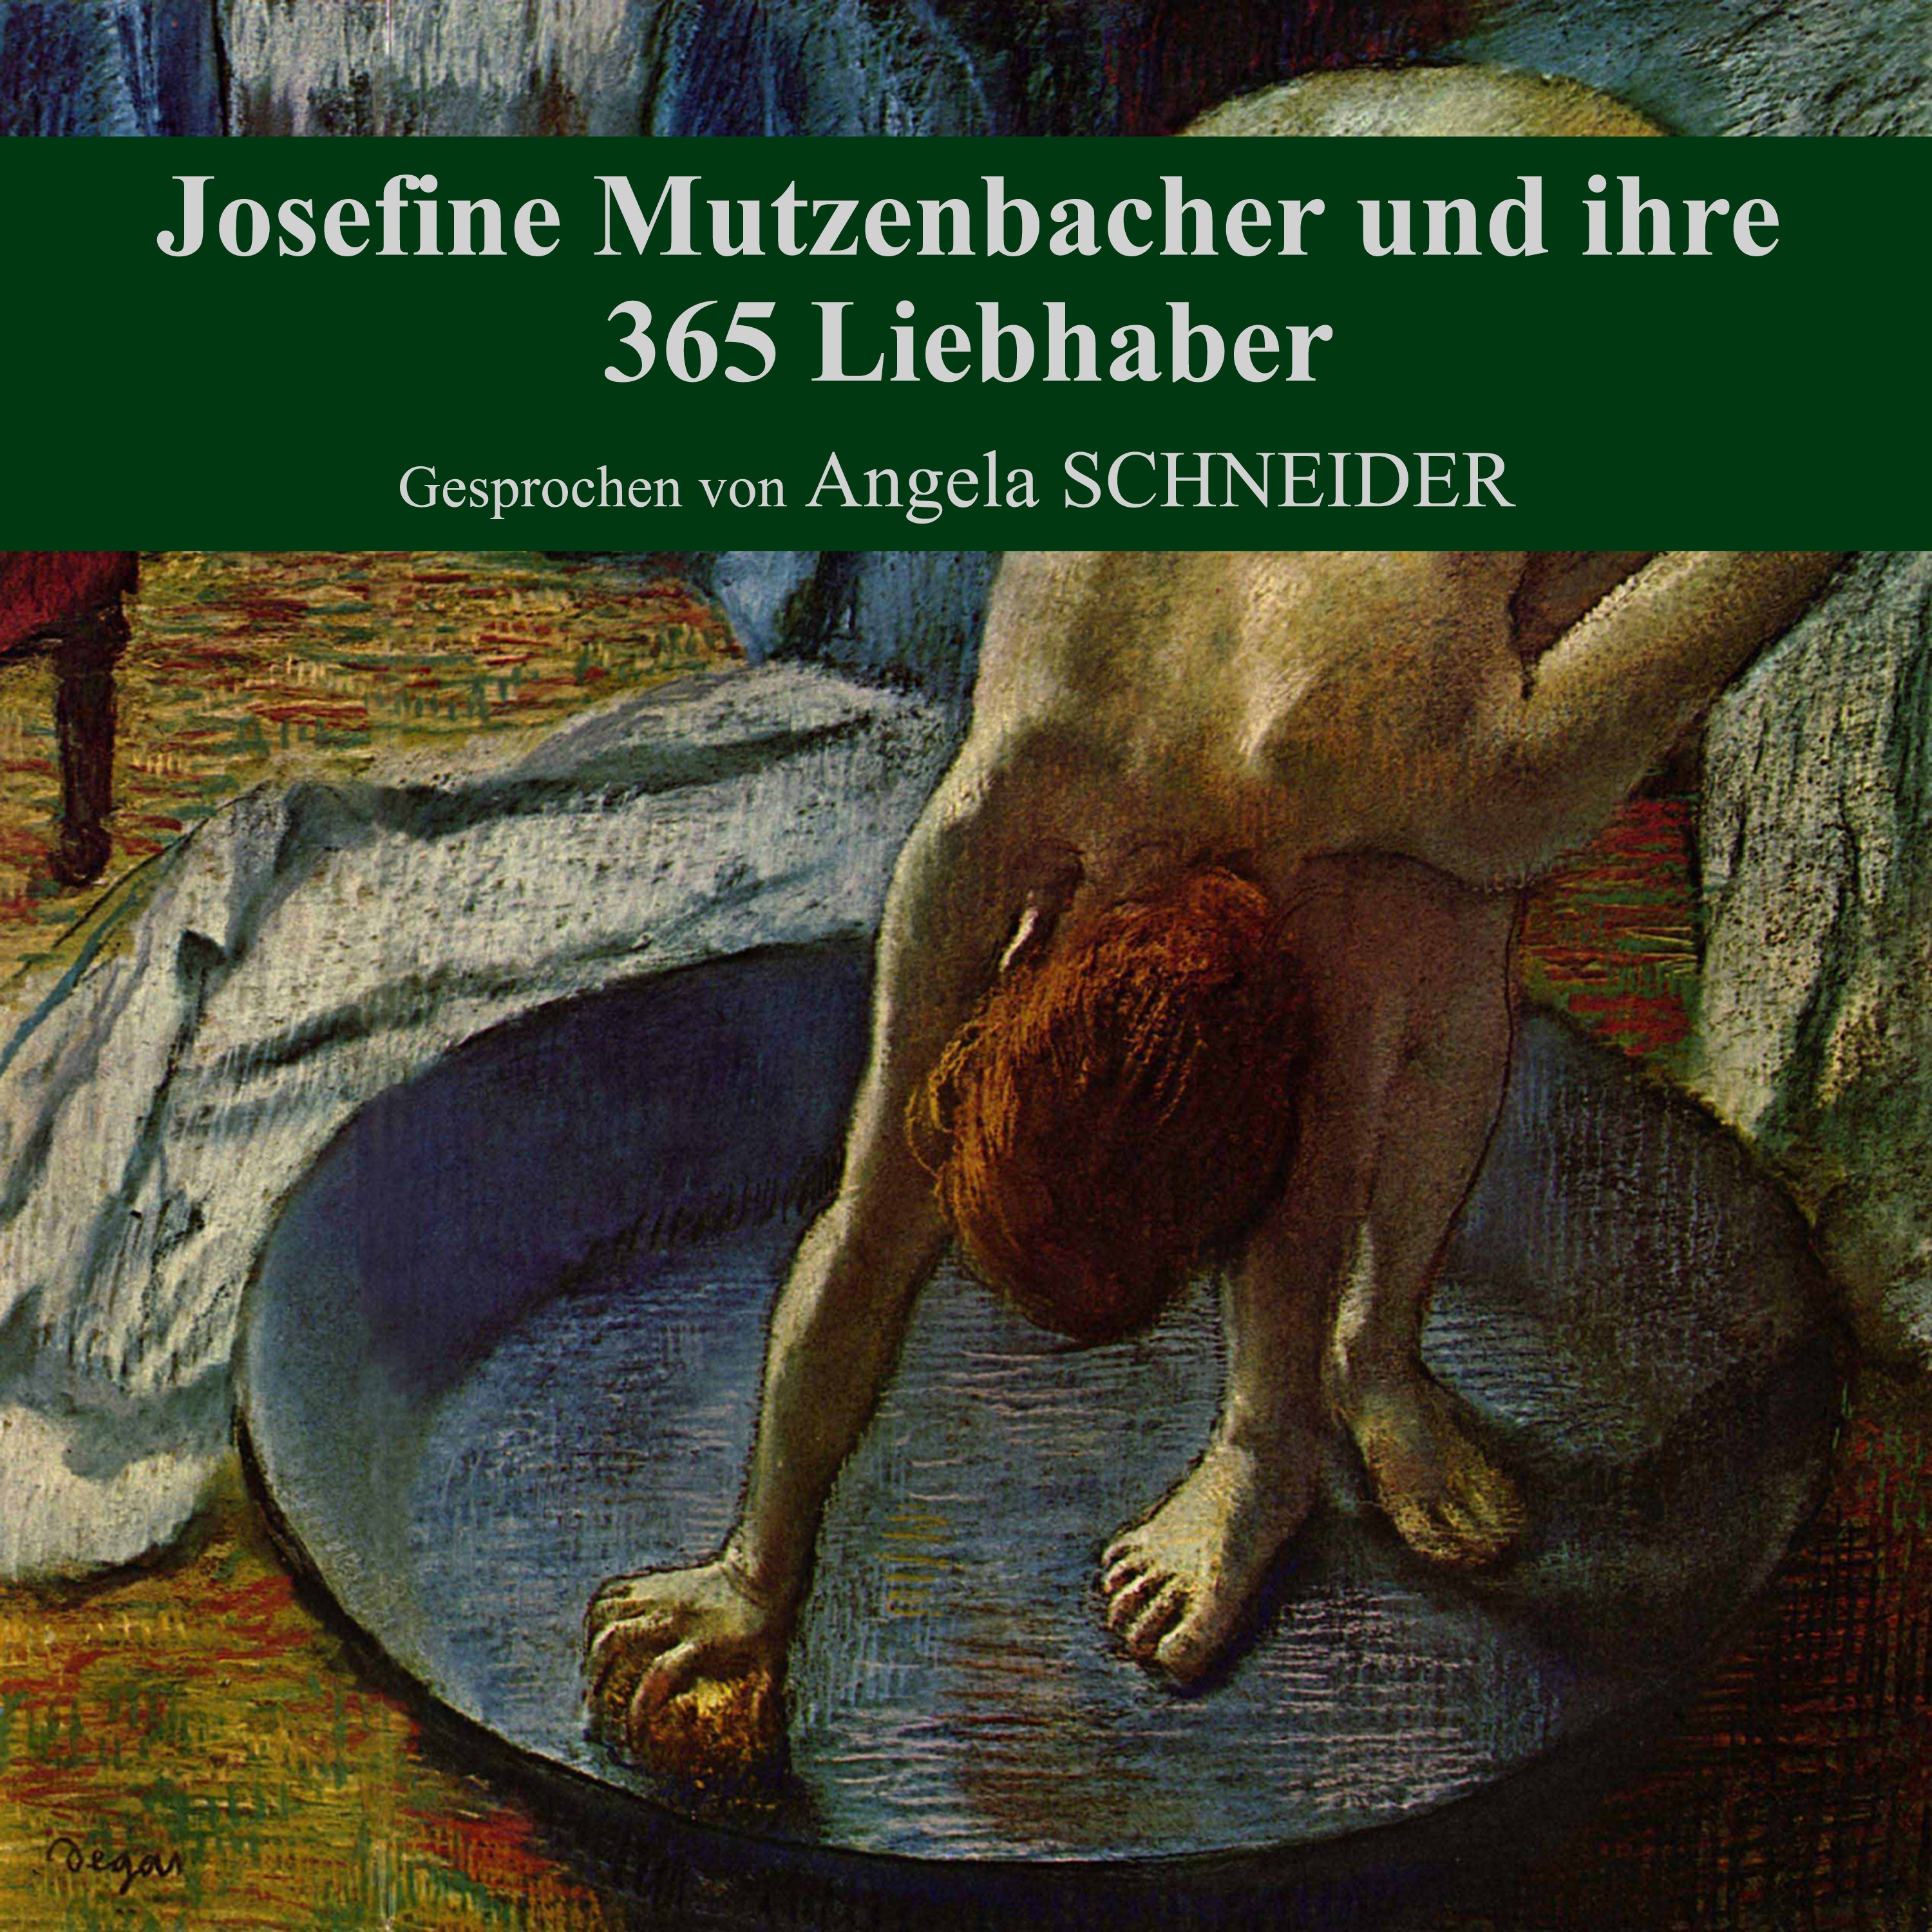 Teil 107: Josefine Mutzenbacher und ihre 365 Liebhaber